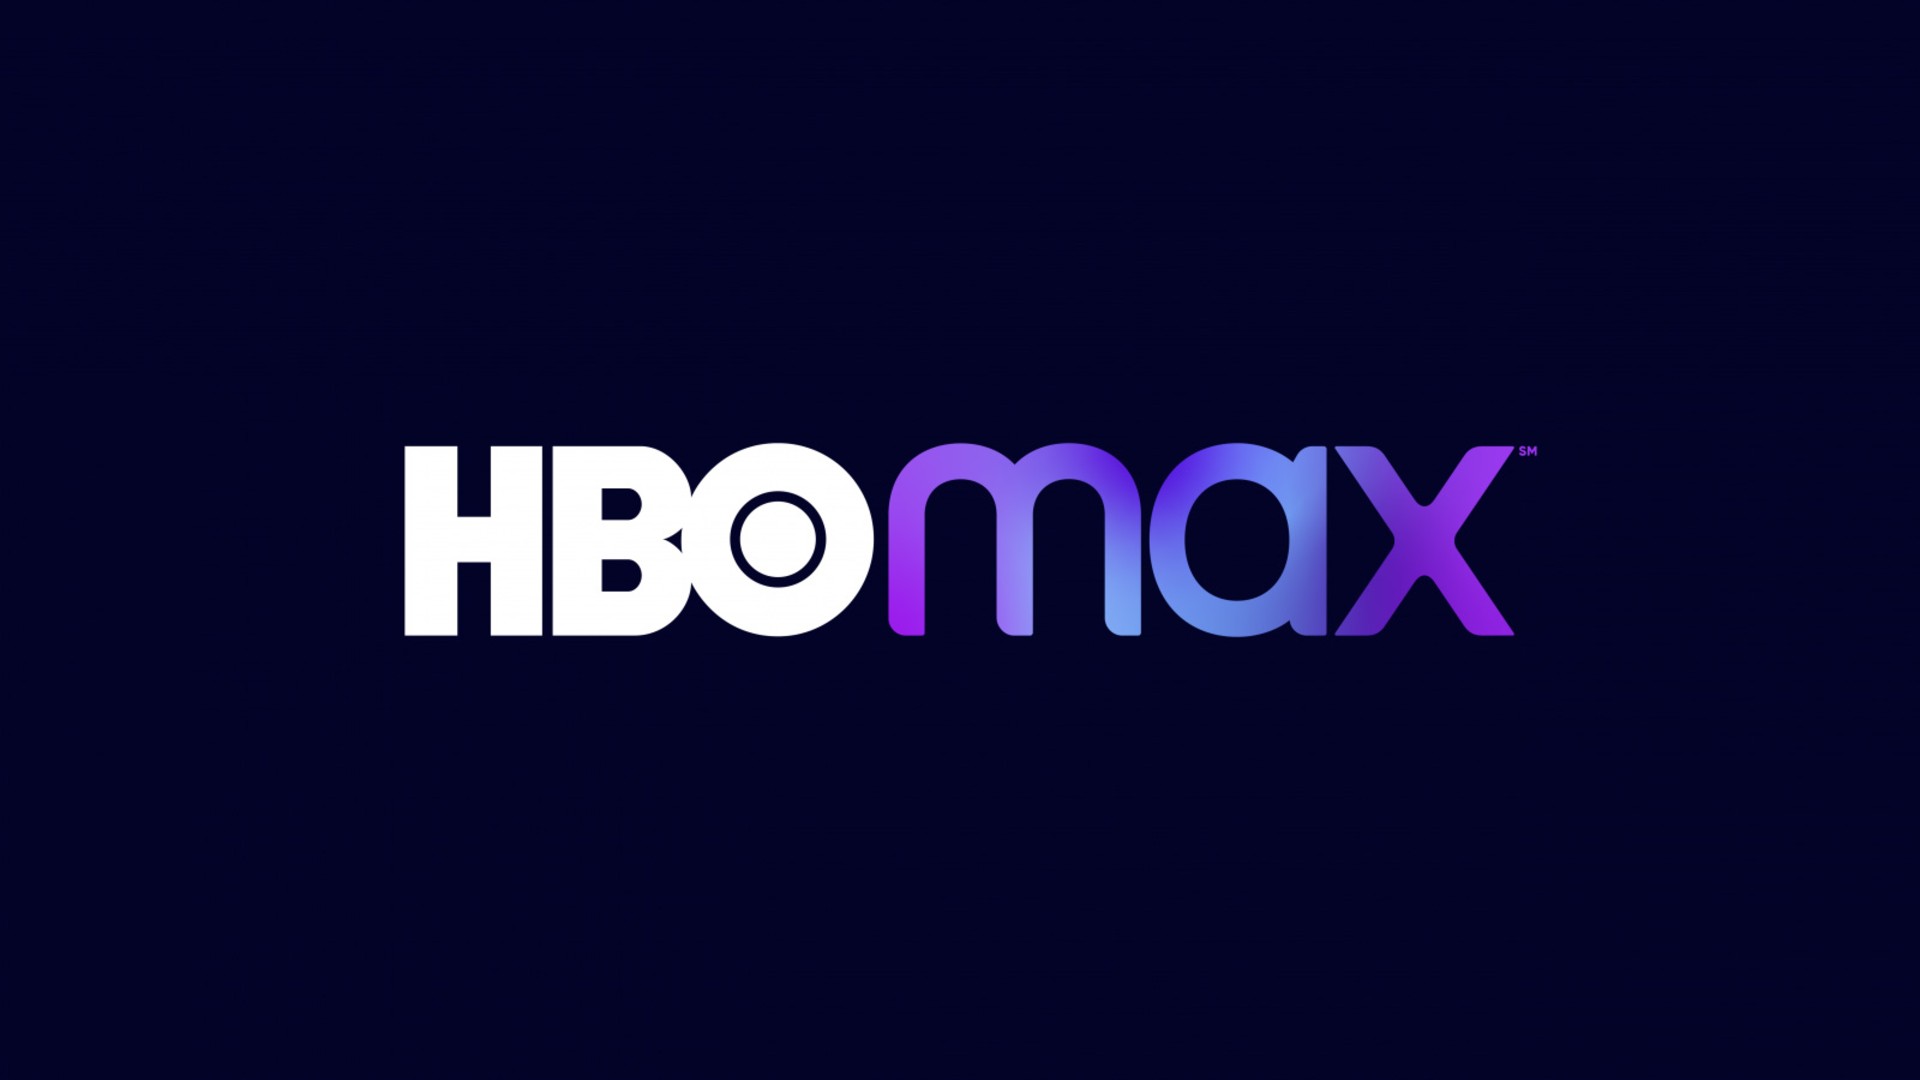 HBO Max anuncia promoção de Black Friday